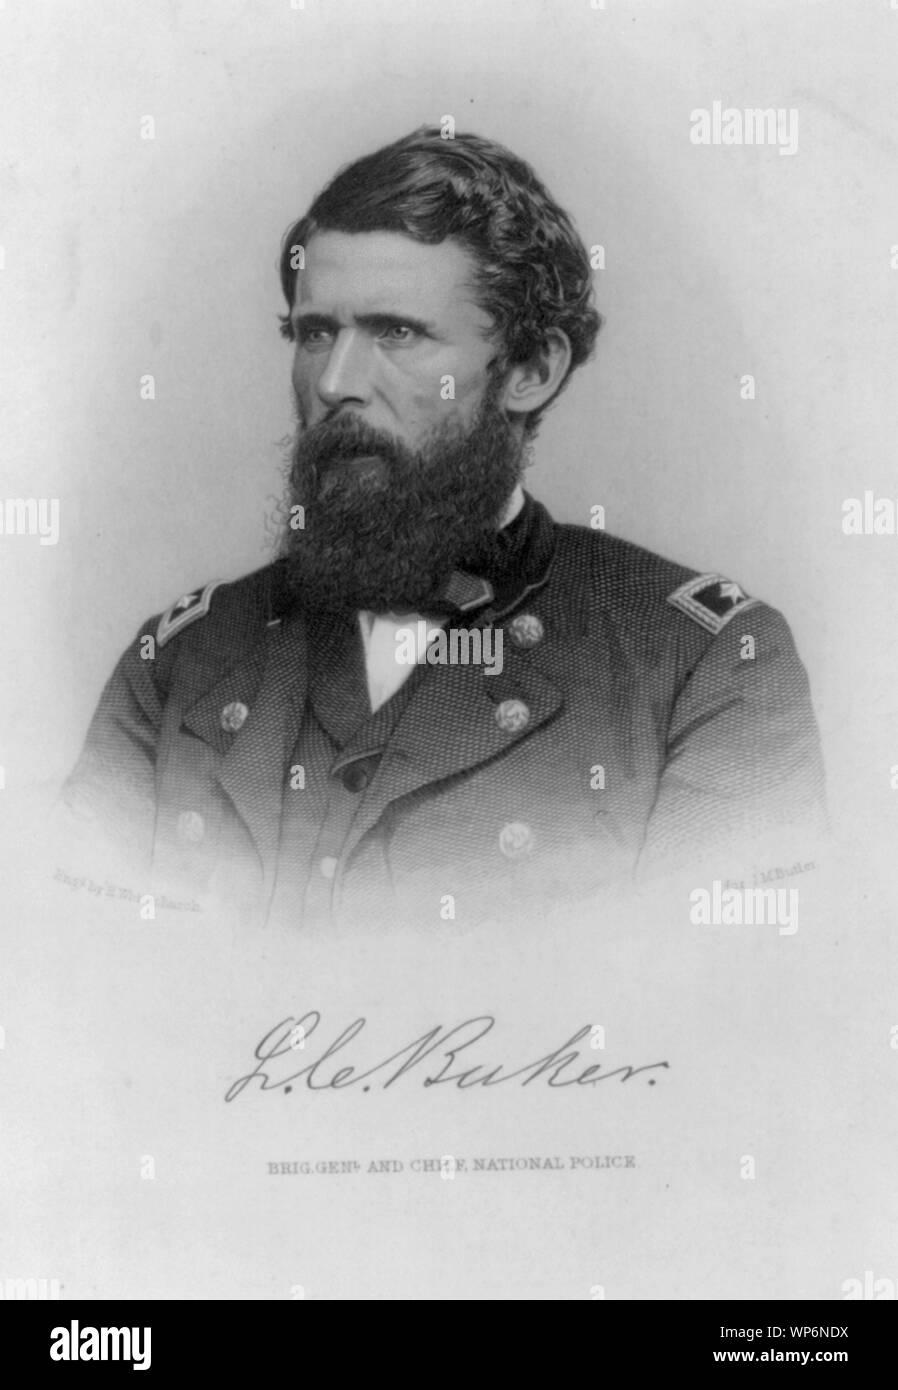 LaFayette Curry Baker, 1826-1868, Brig. Général et Chef de la Police nationale, de la tête et des épaules, face vers la gauche Banque D'Images